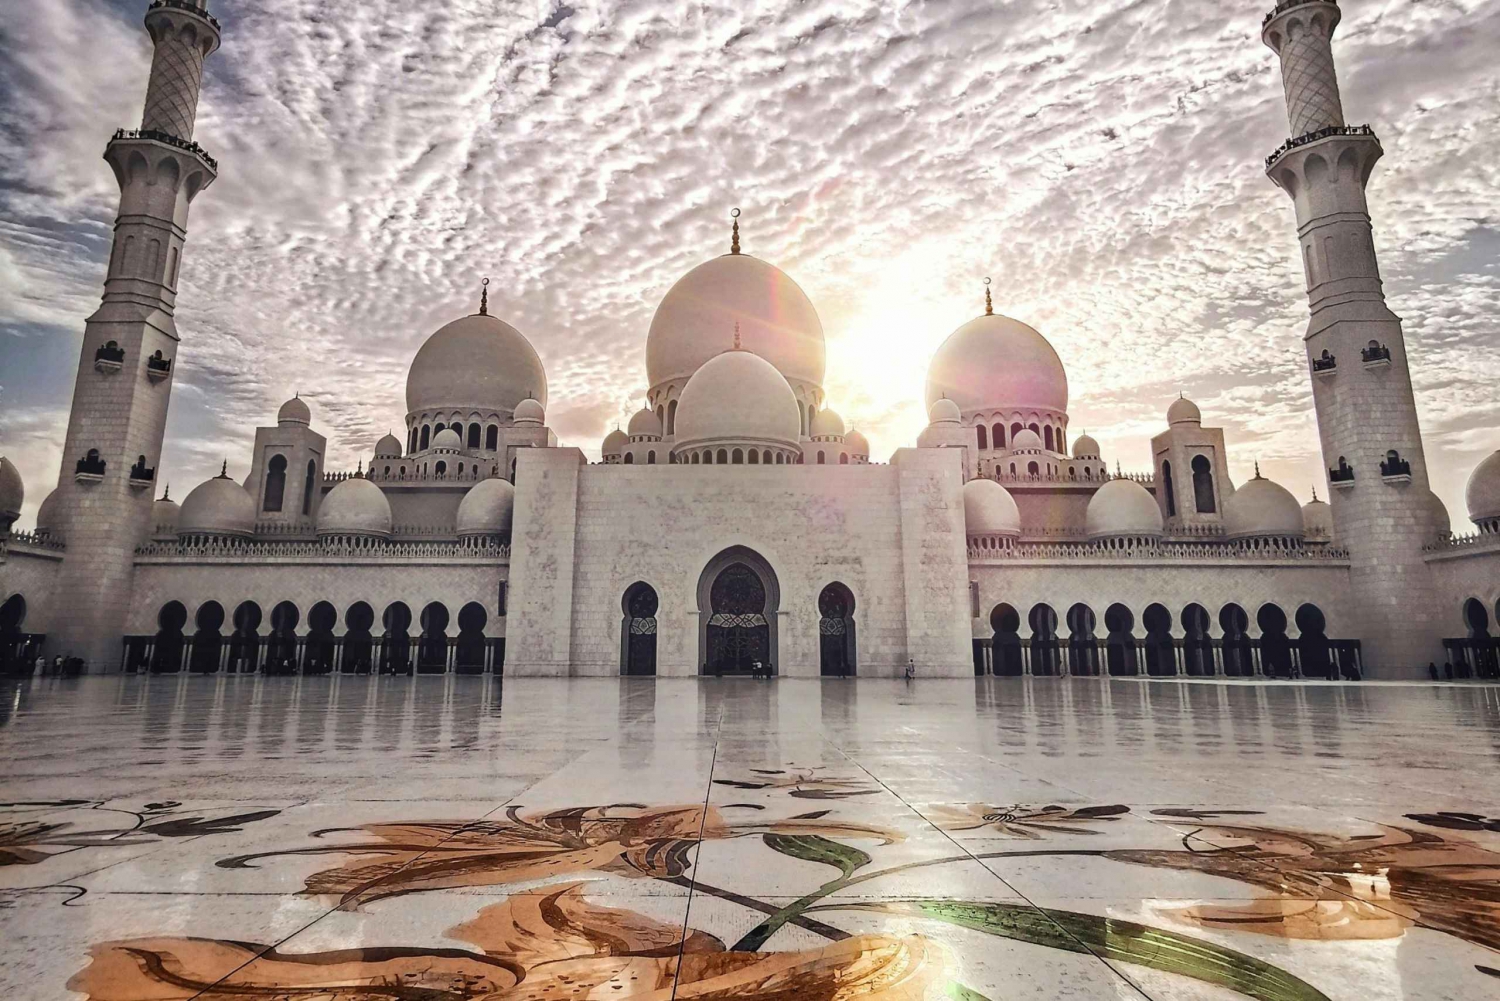 Da Dubai: Tour di Abu Dhabi di una giornata intera con visita alla Moschea